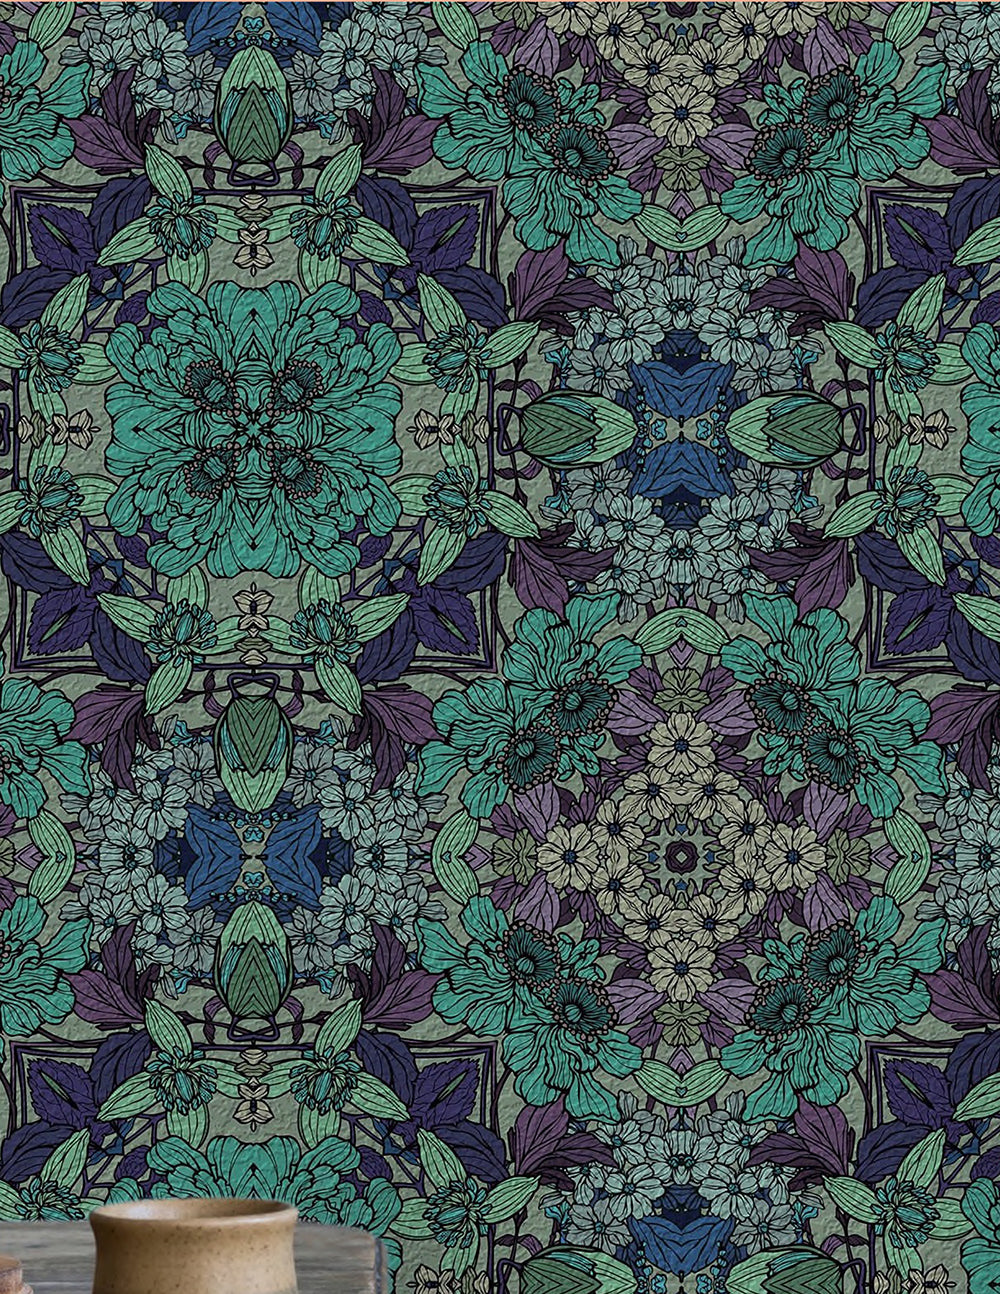 Teal Floral Wallpaper